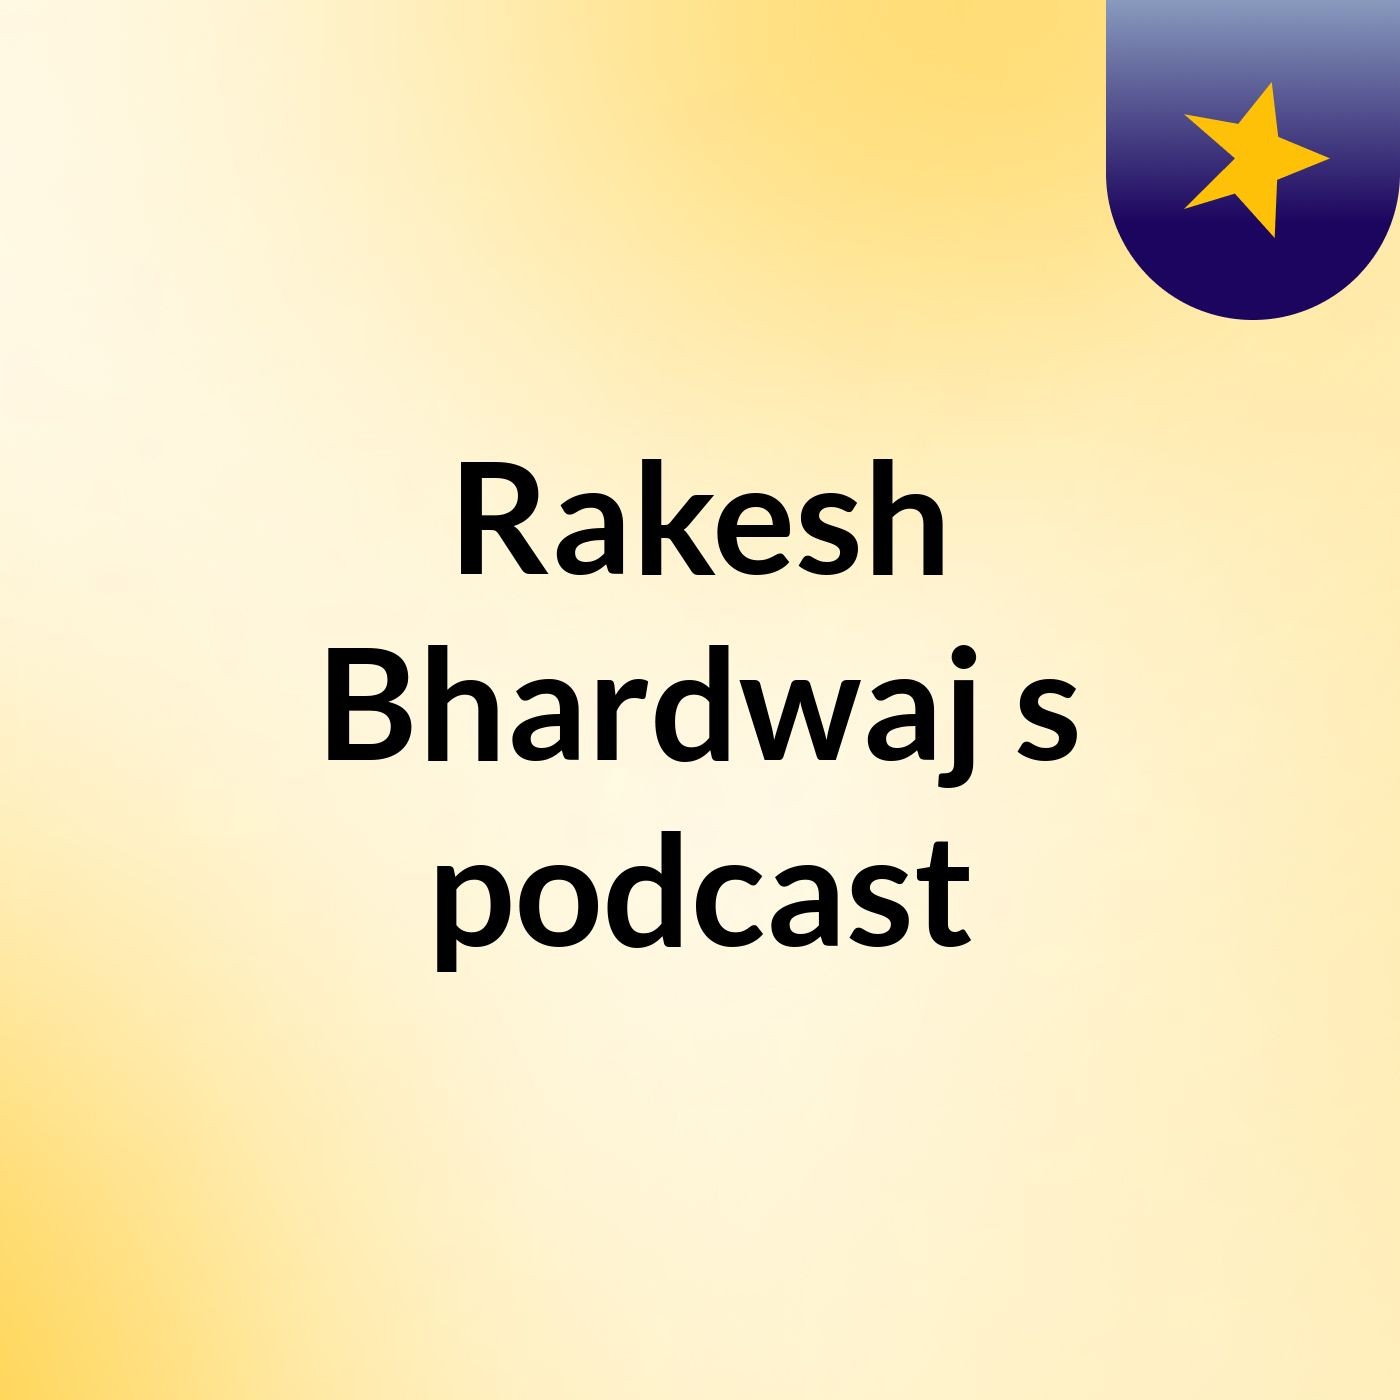 Rakesh Bhardwaj's podcast